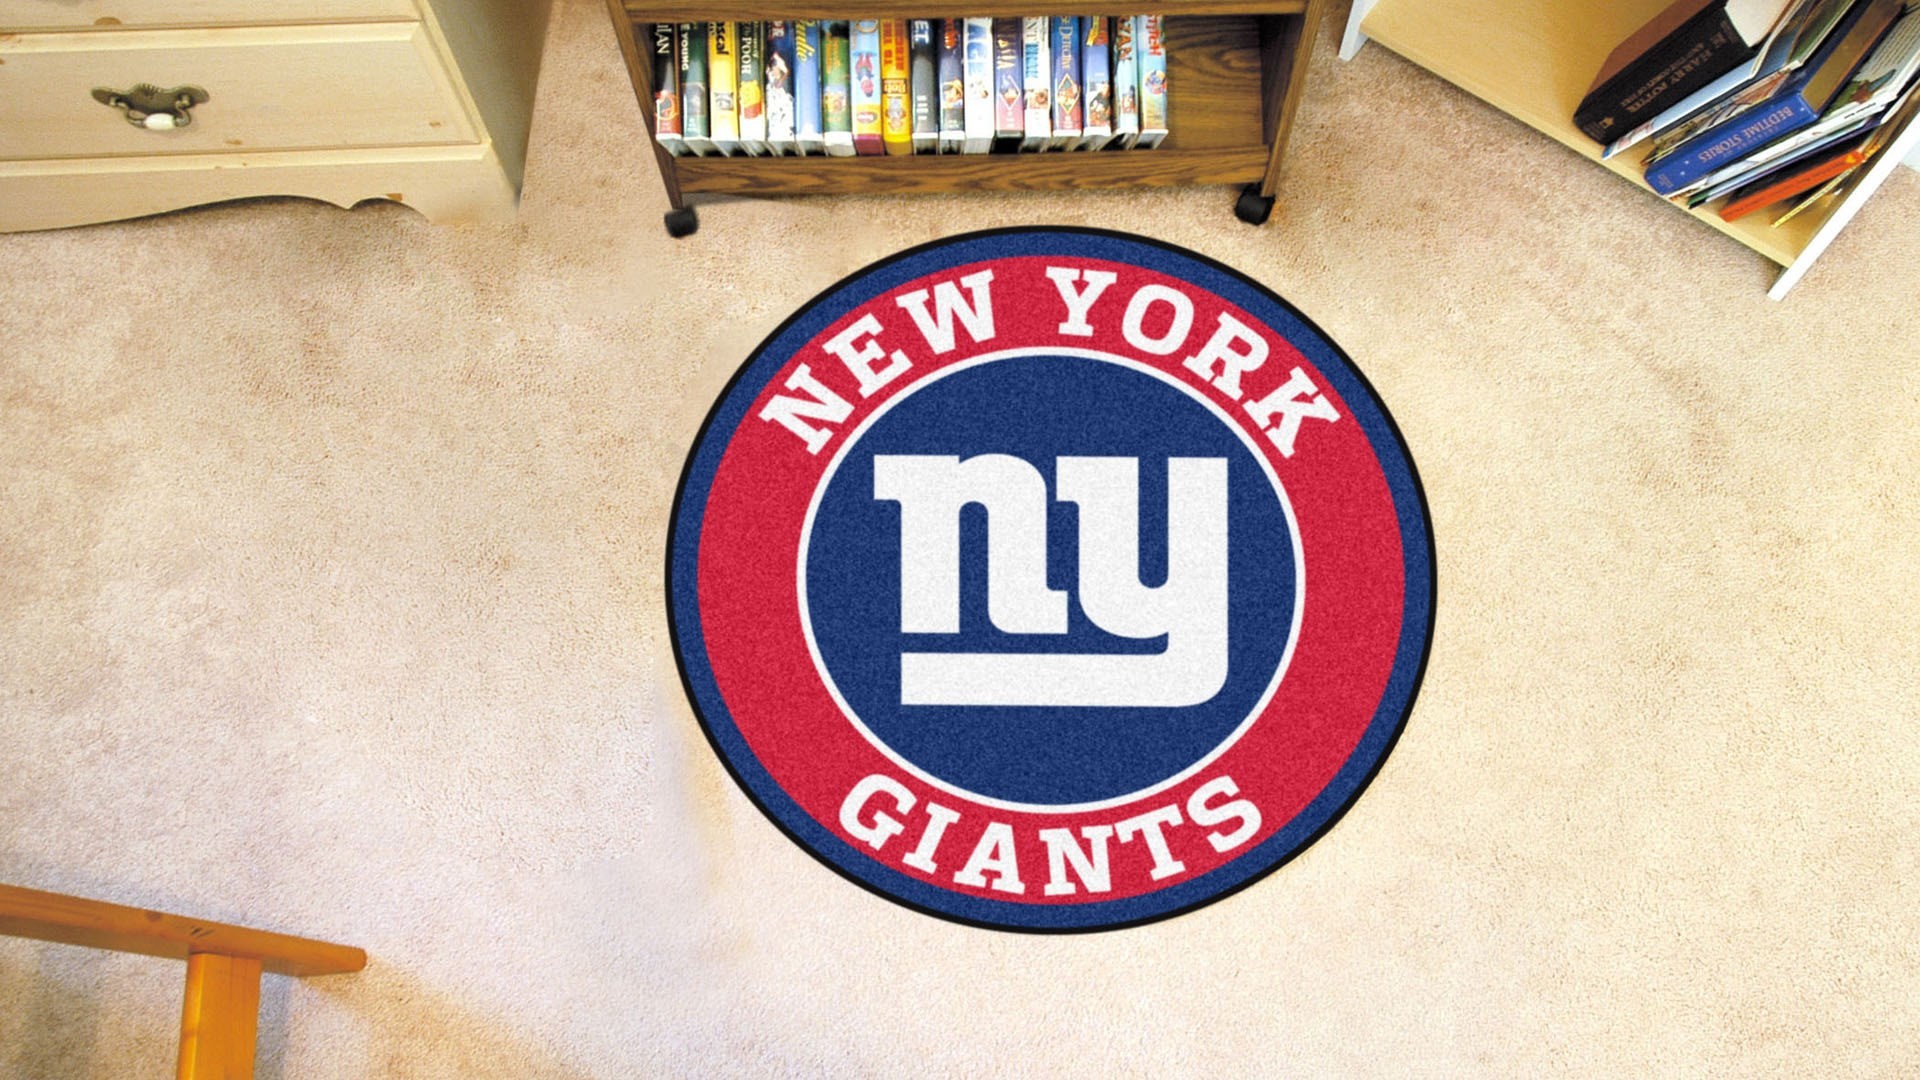 1920x1080 Images for Desktop: new york giants wallpaper - new york giants category